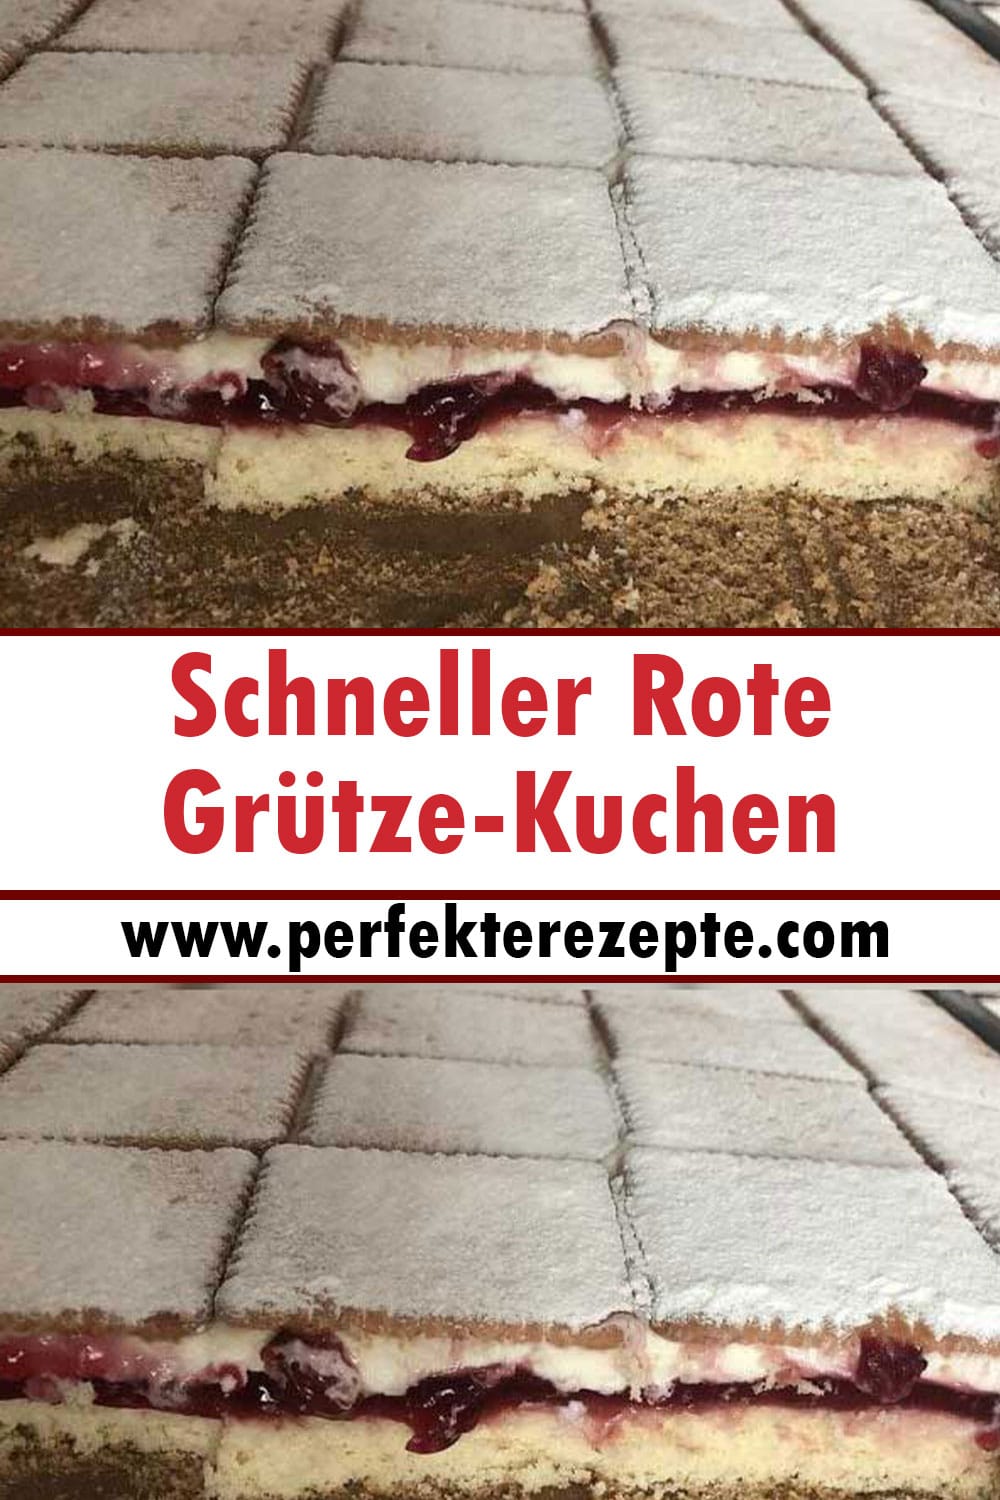 Schneller Rote Grütze-Kuchen Rezept